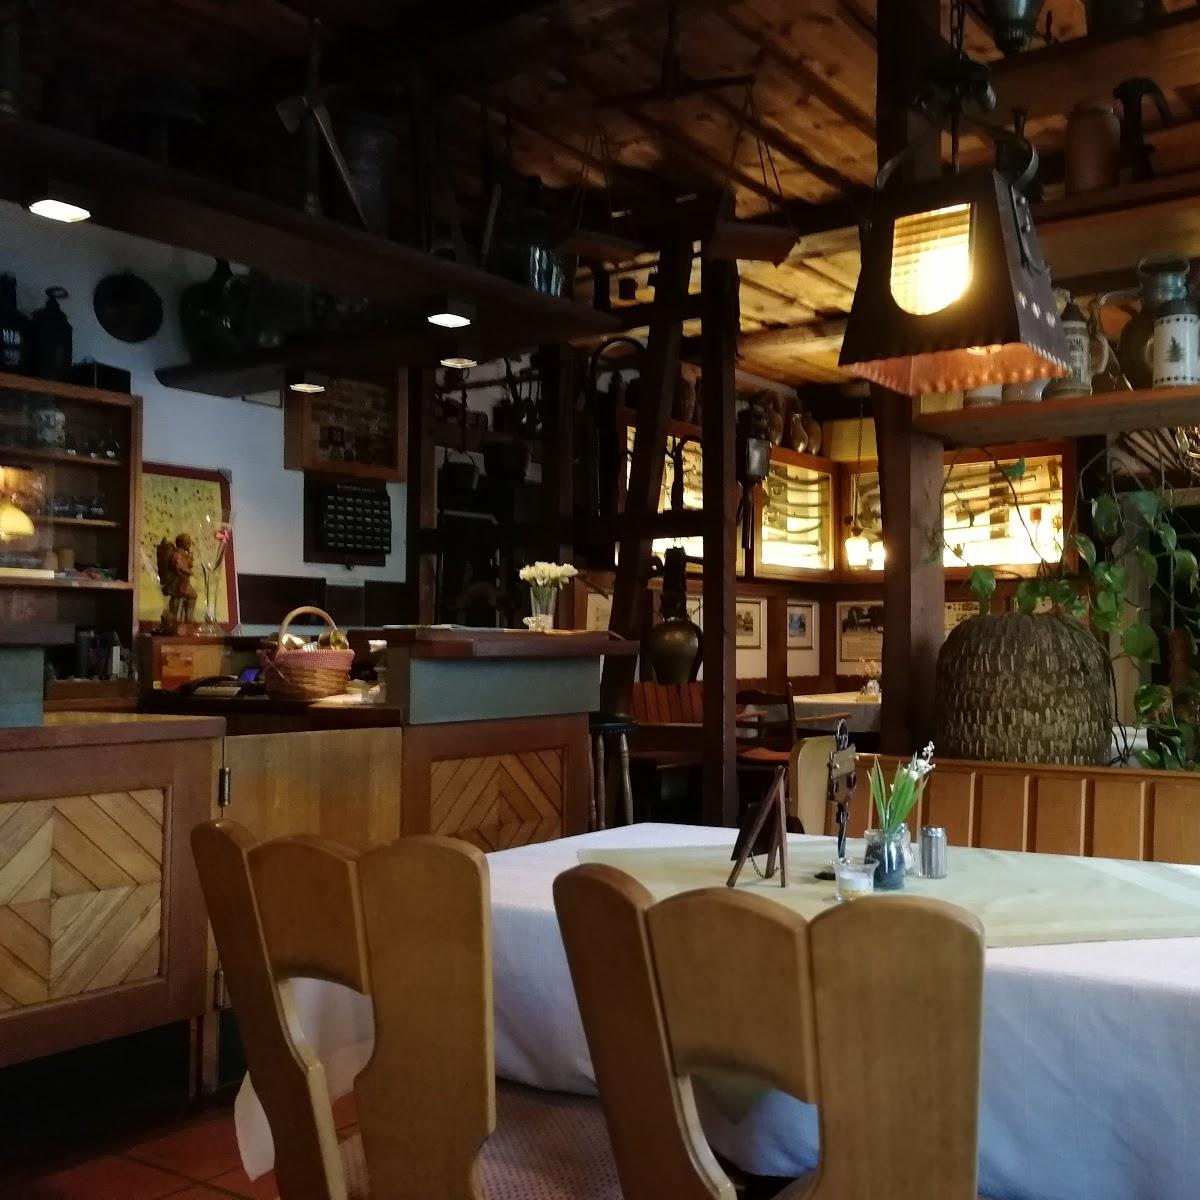 Restaurant "Gasthof Stumpf" in  Embsen